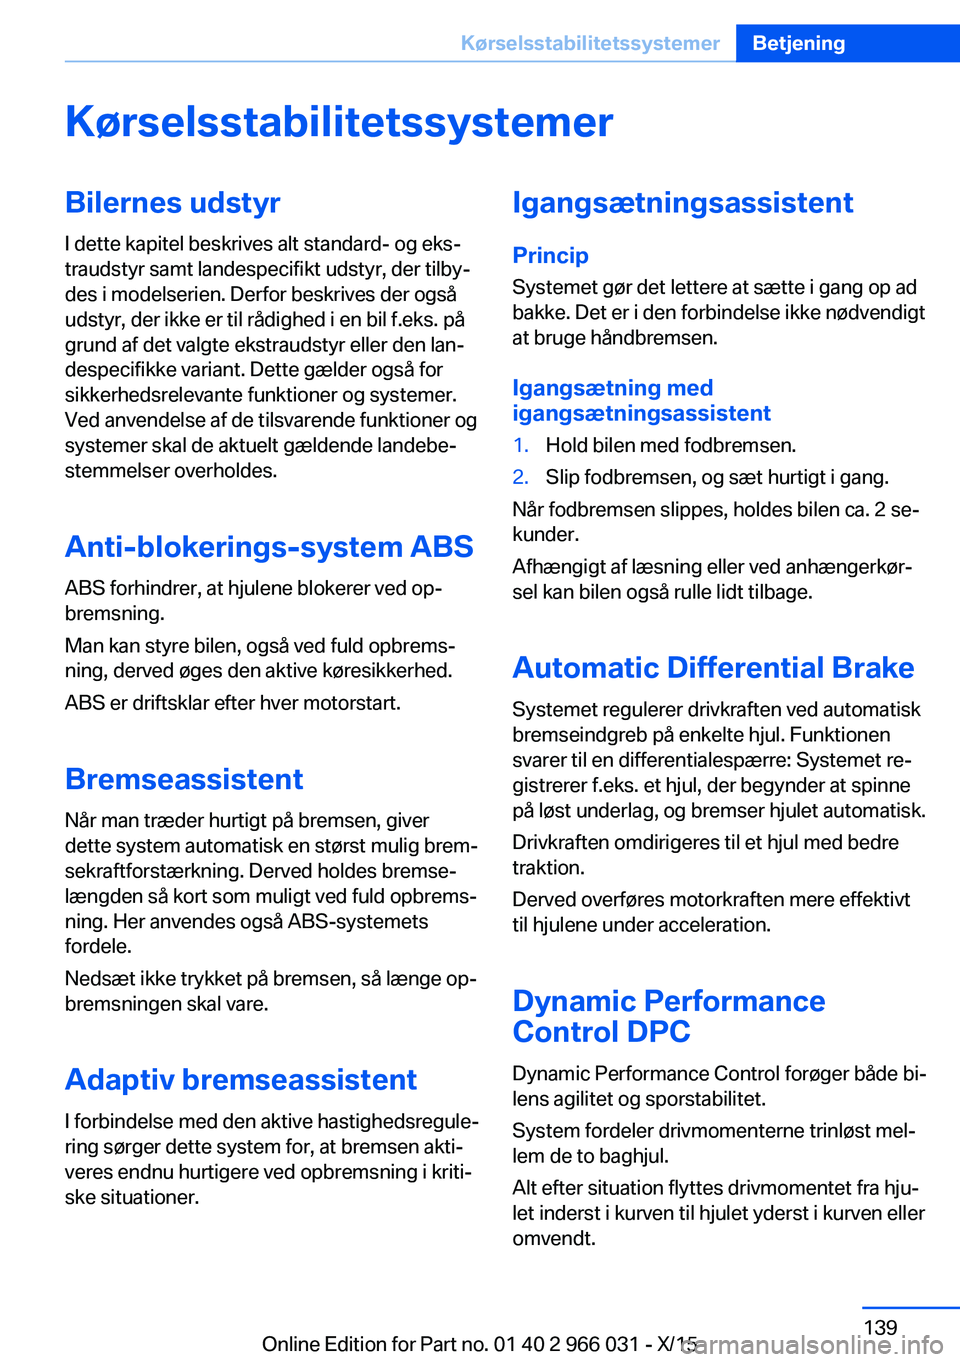 BMW X6 2016  InstruktionsbØger (in Danish) KørselsstabilitetssystemerBilernes udstyrI dette kapitel beskrives alt standard- og eks‐
traudstyr samt landespecifikt udstyr, der tilby‐
des i modelserien. Derfor beskrives der også
udstyr, der